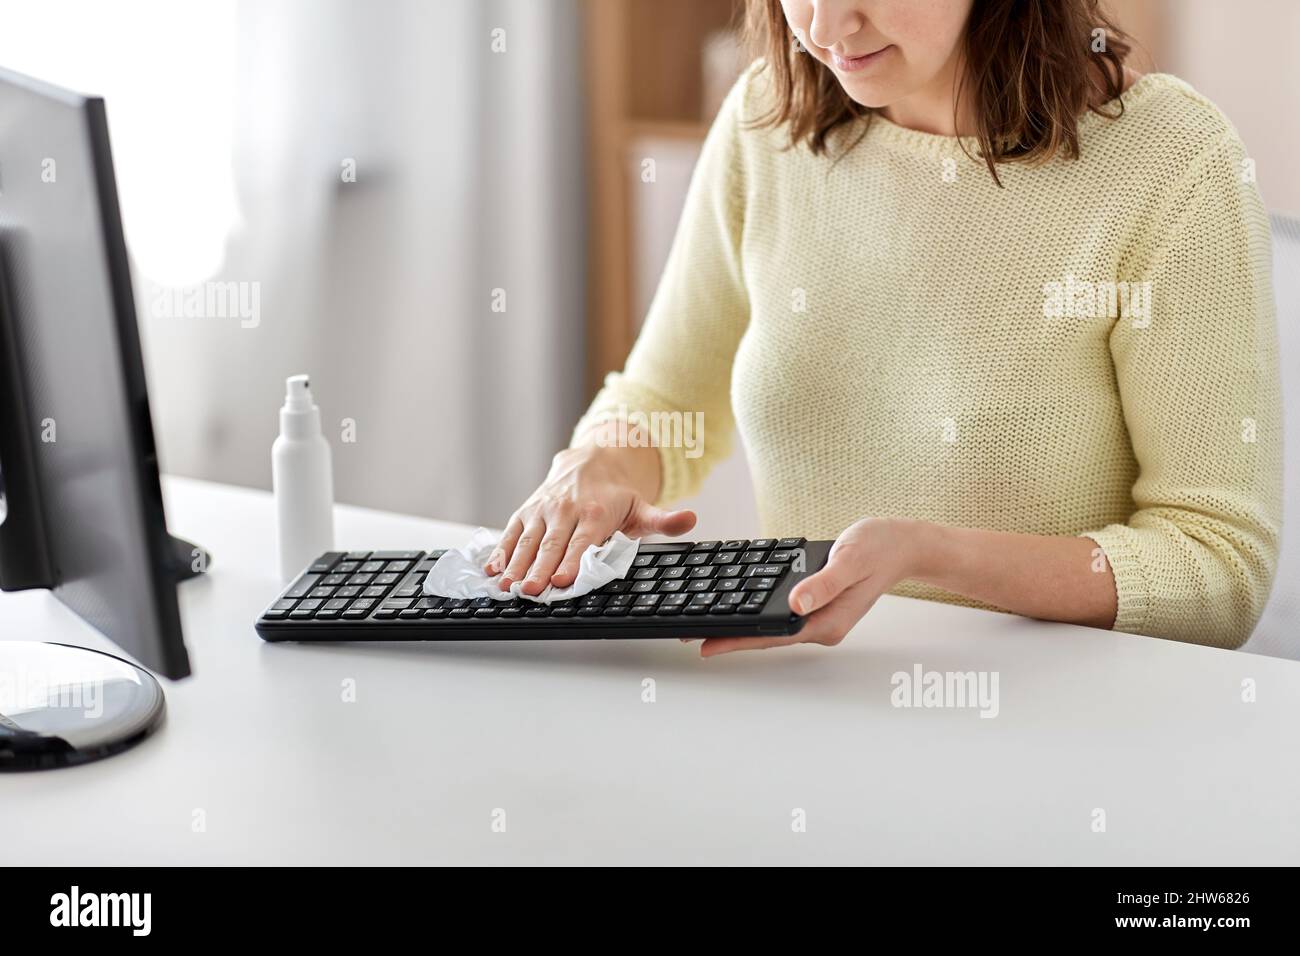 primo piano della donna che pulisce la tastiera con igienizzatore Foto Stock